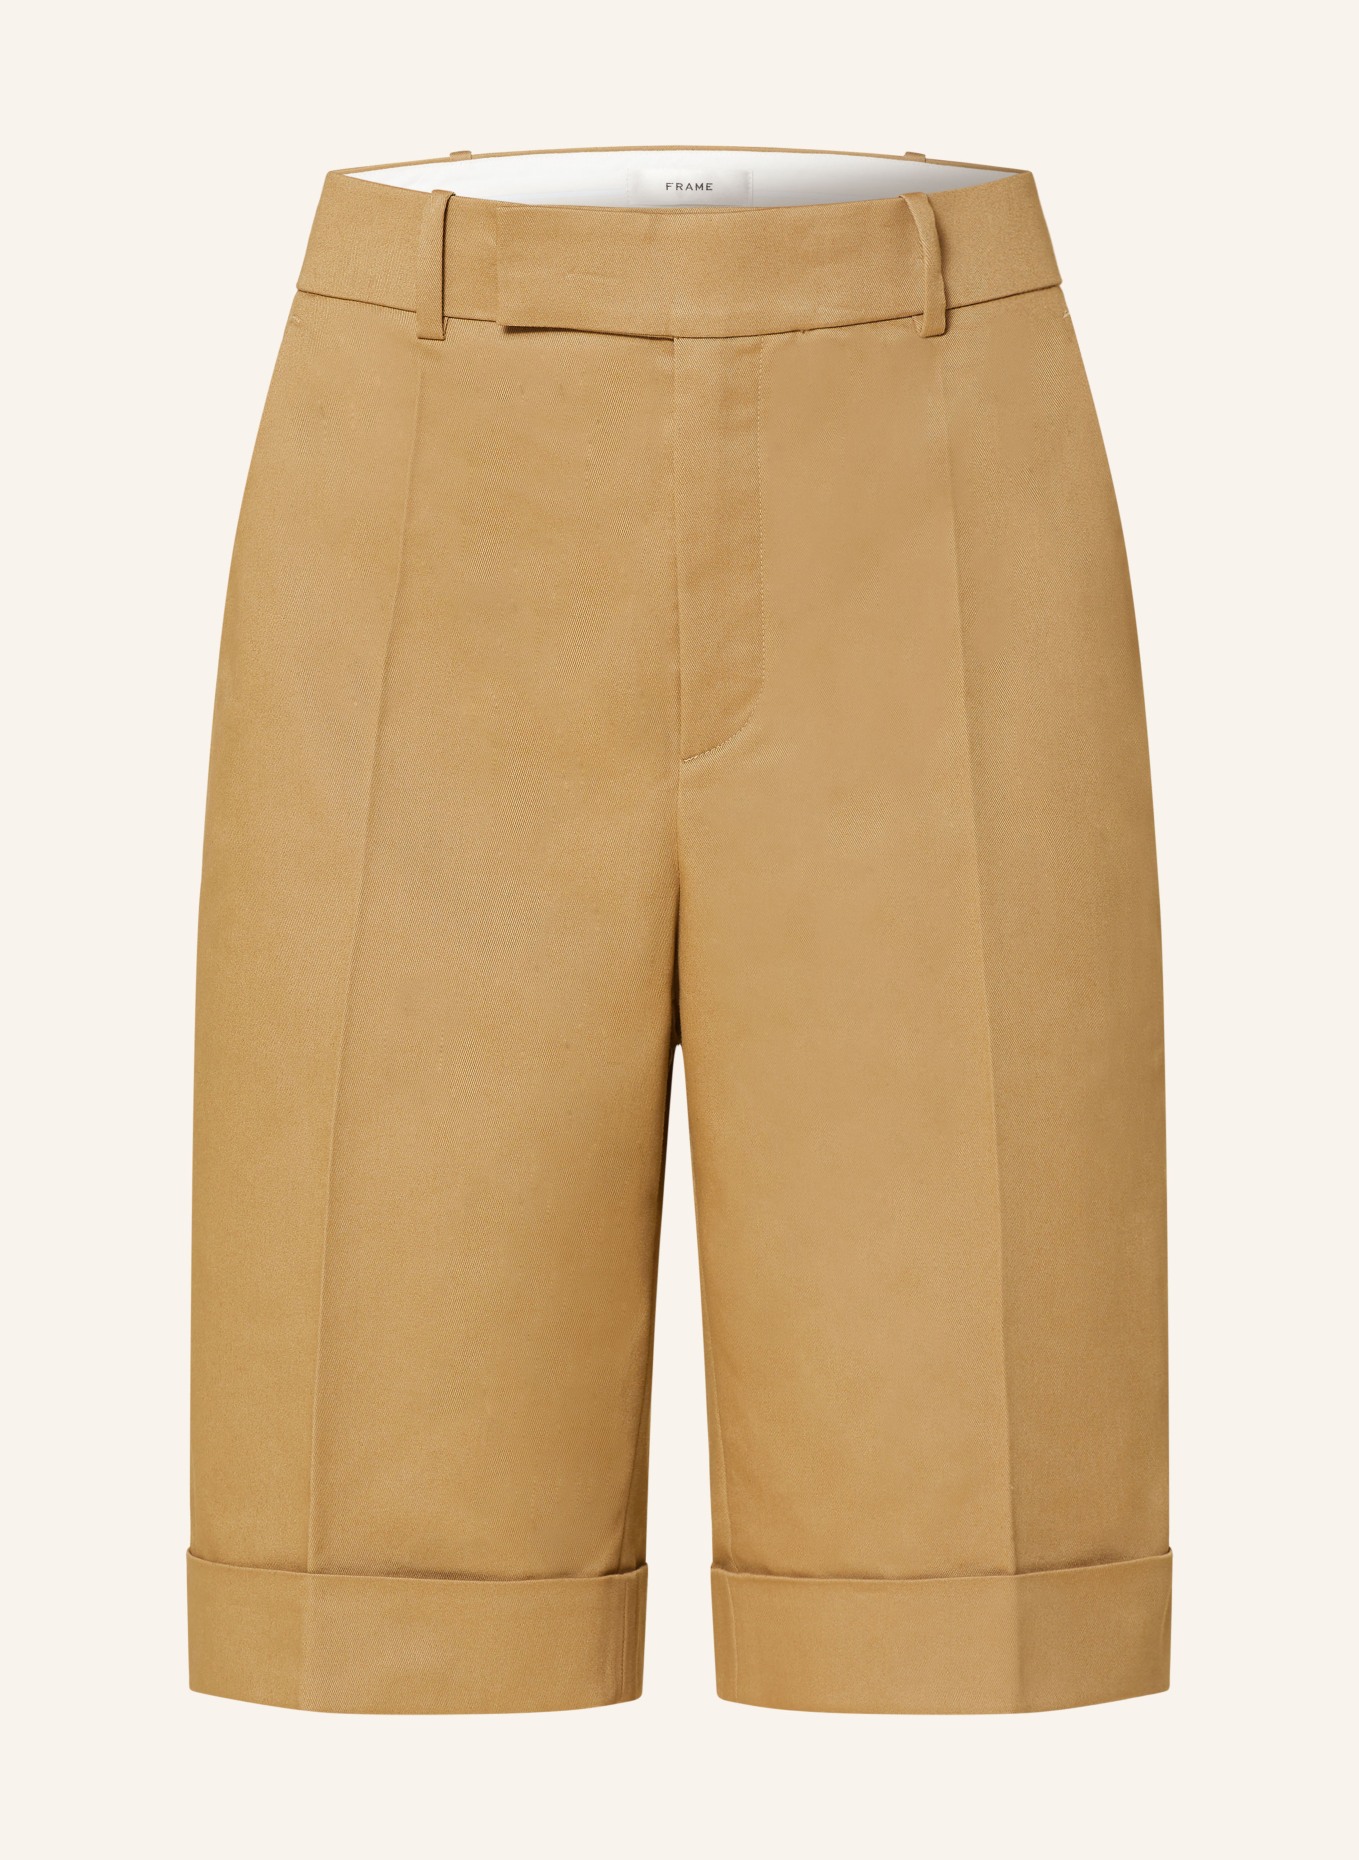 FRAME Shorts, Color: CAMEL (Image 1)